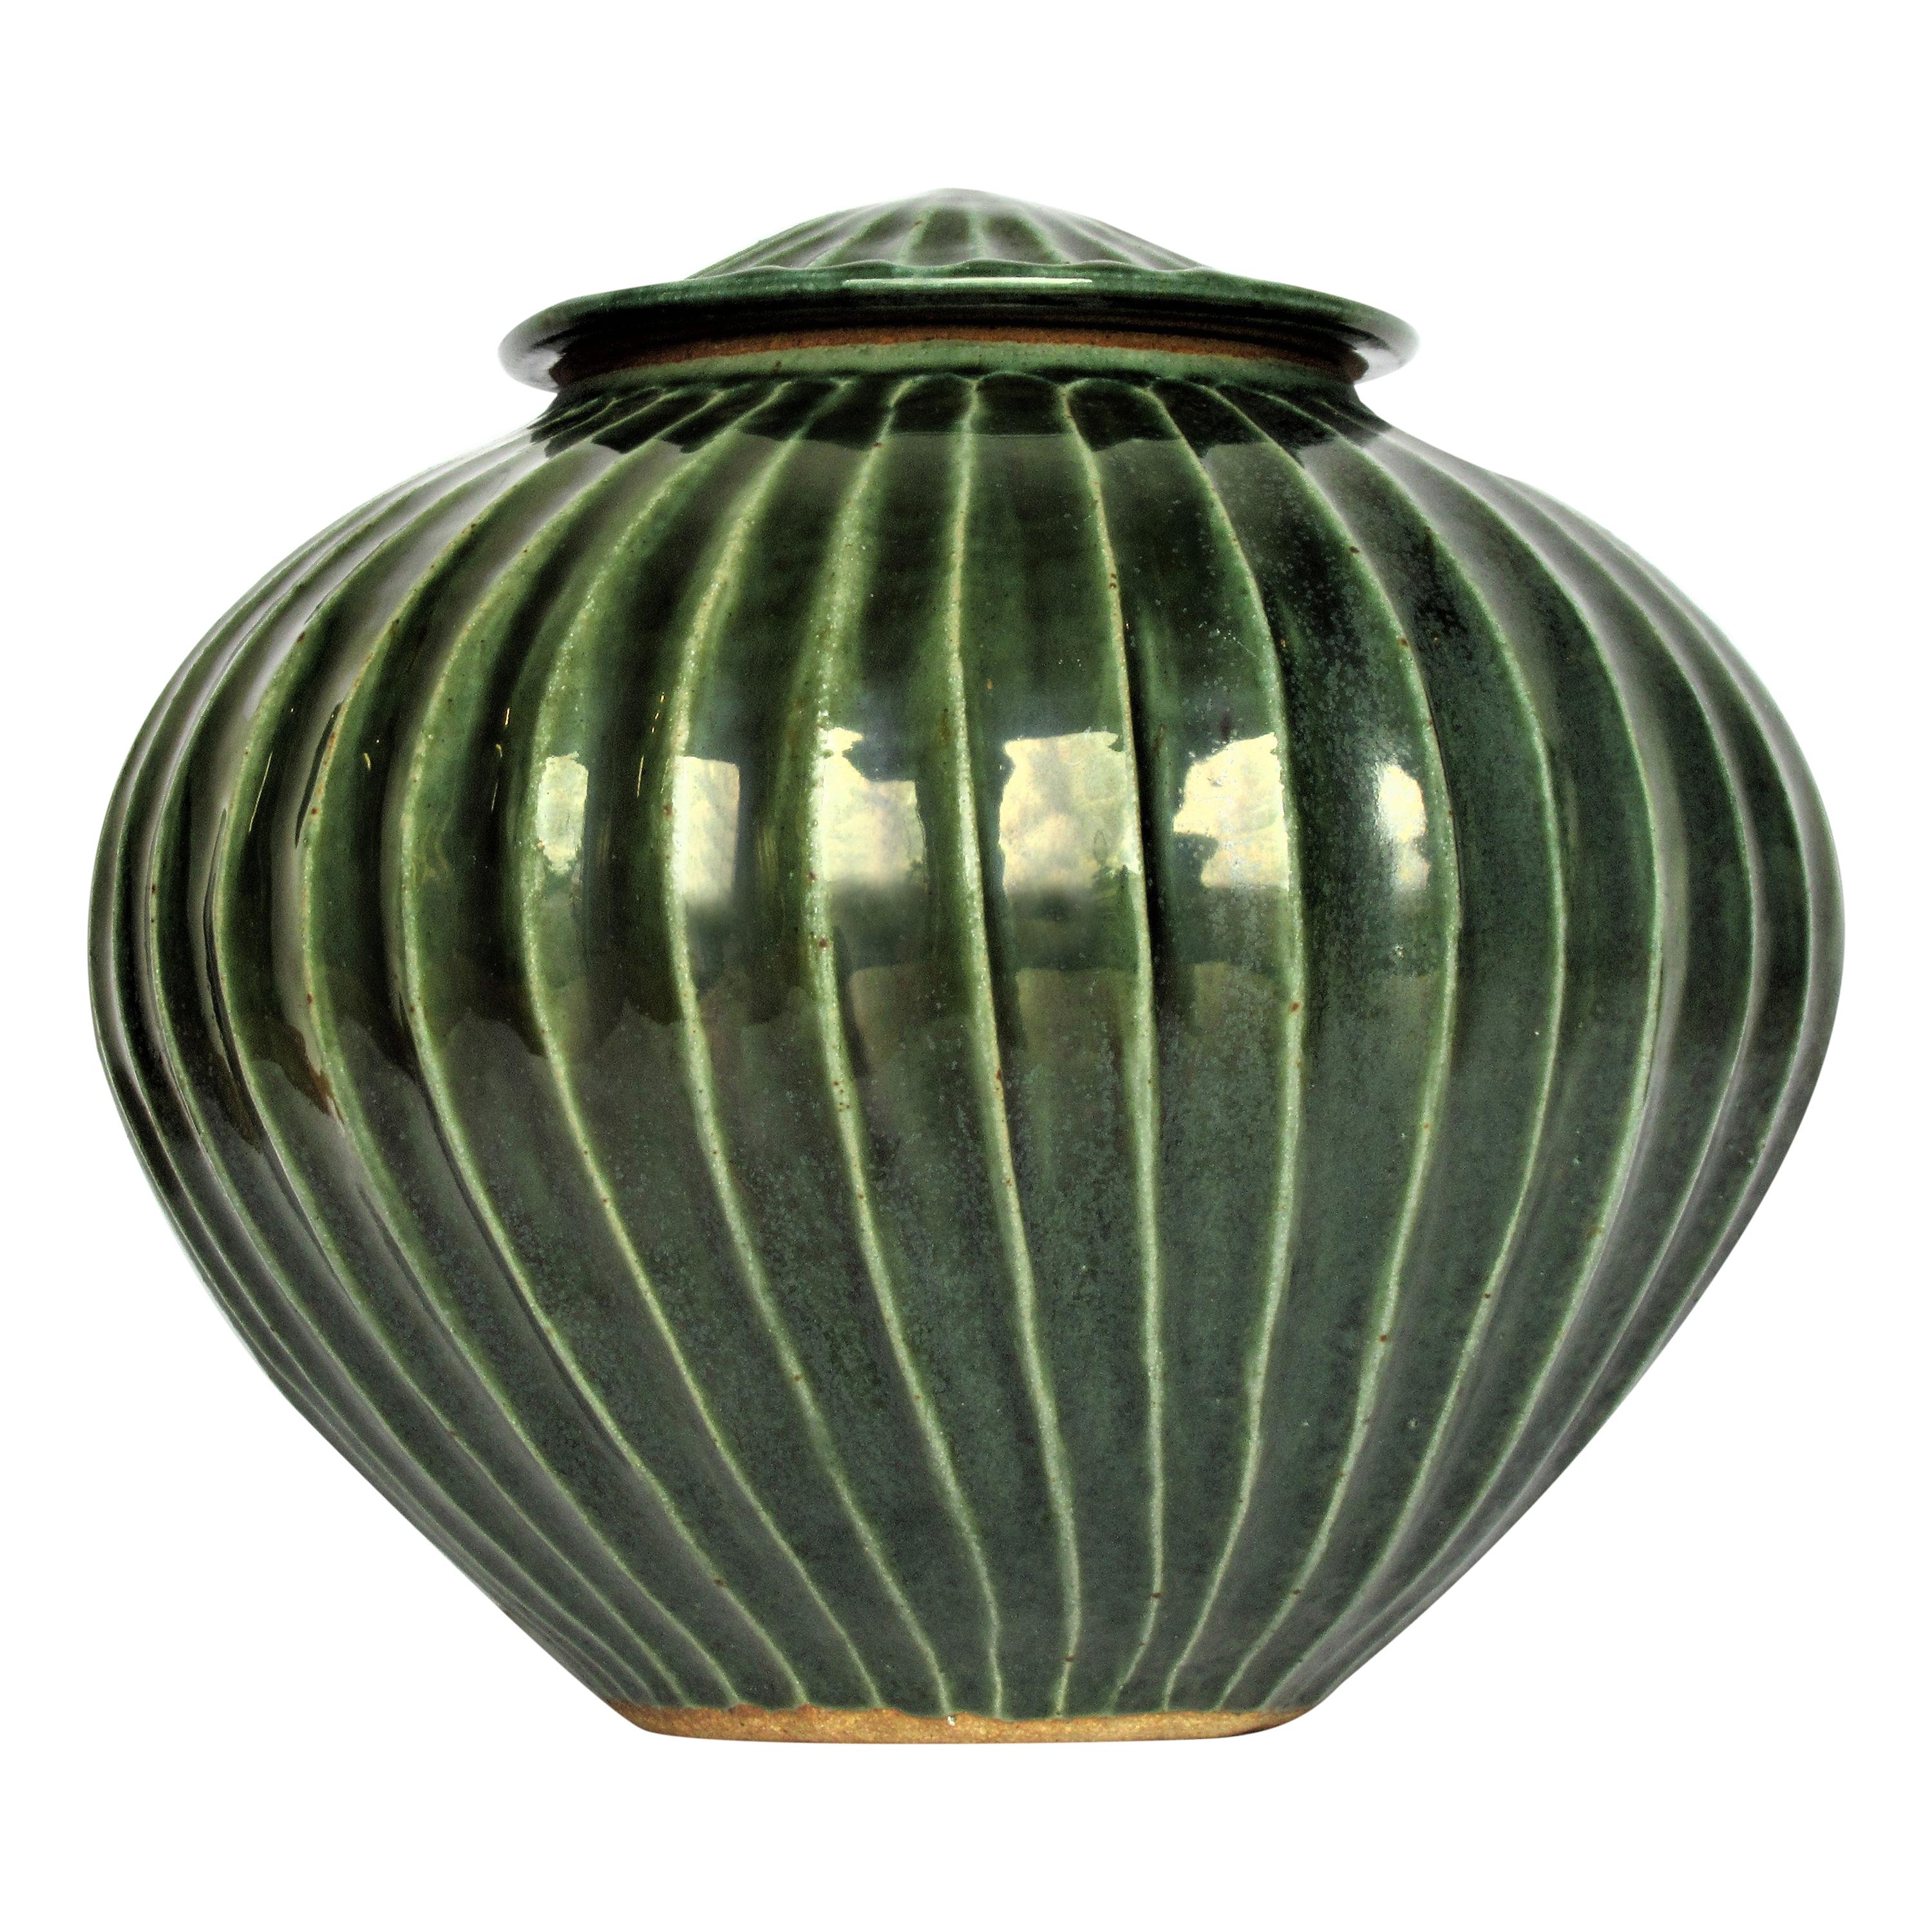 Celadon Jade Green Glazed Stoneware Lidded Vessel